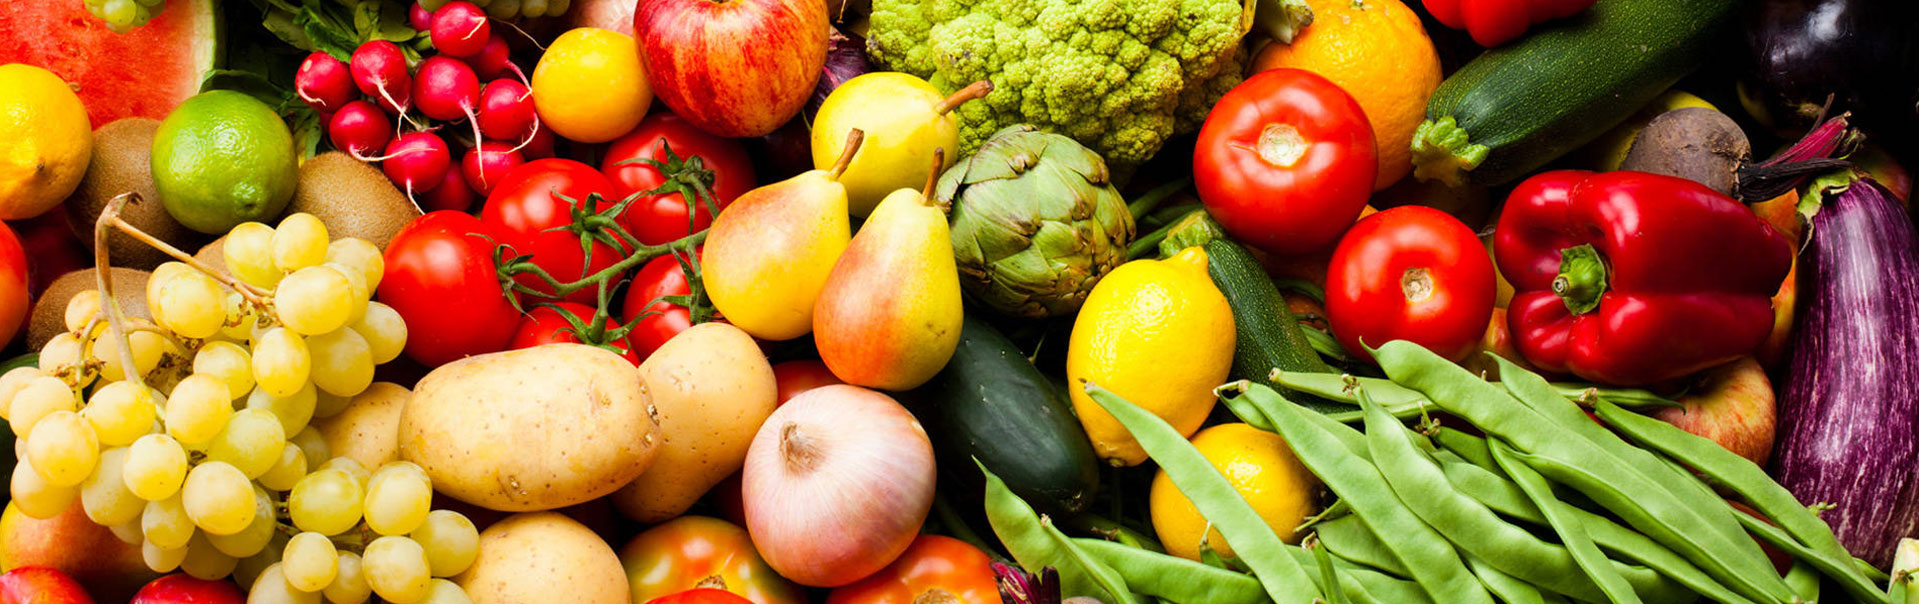 Thomas Fruits - Grossiste Distributeur Fruits Légumes